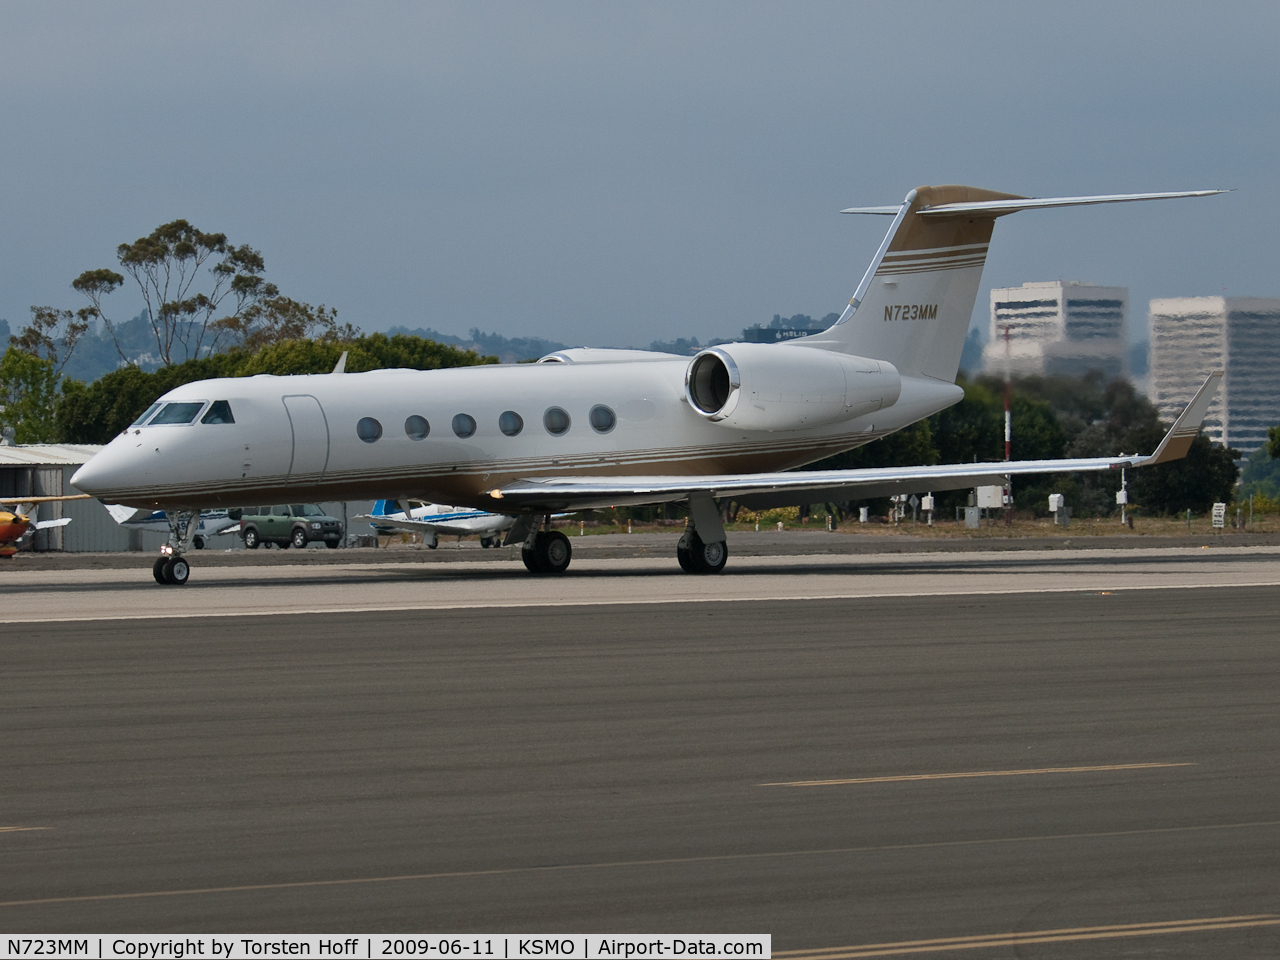 N723MM, 2007 Gulfstream Aerospace GIV-X (G350) C/N 4077, N723MM departing from RWY 21